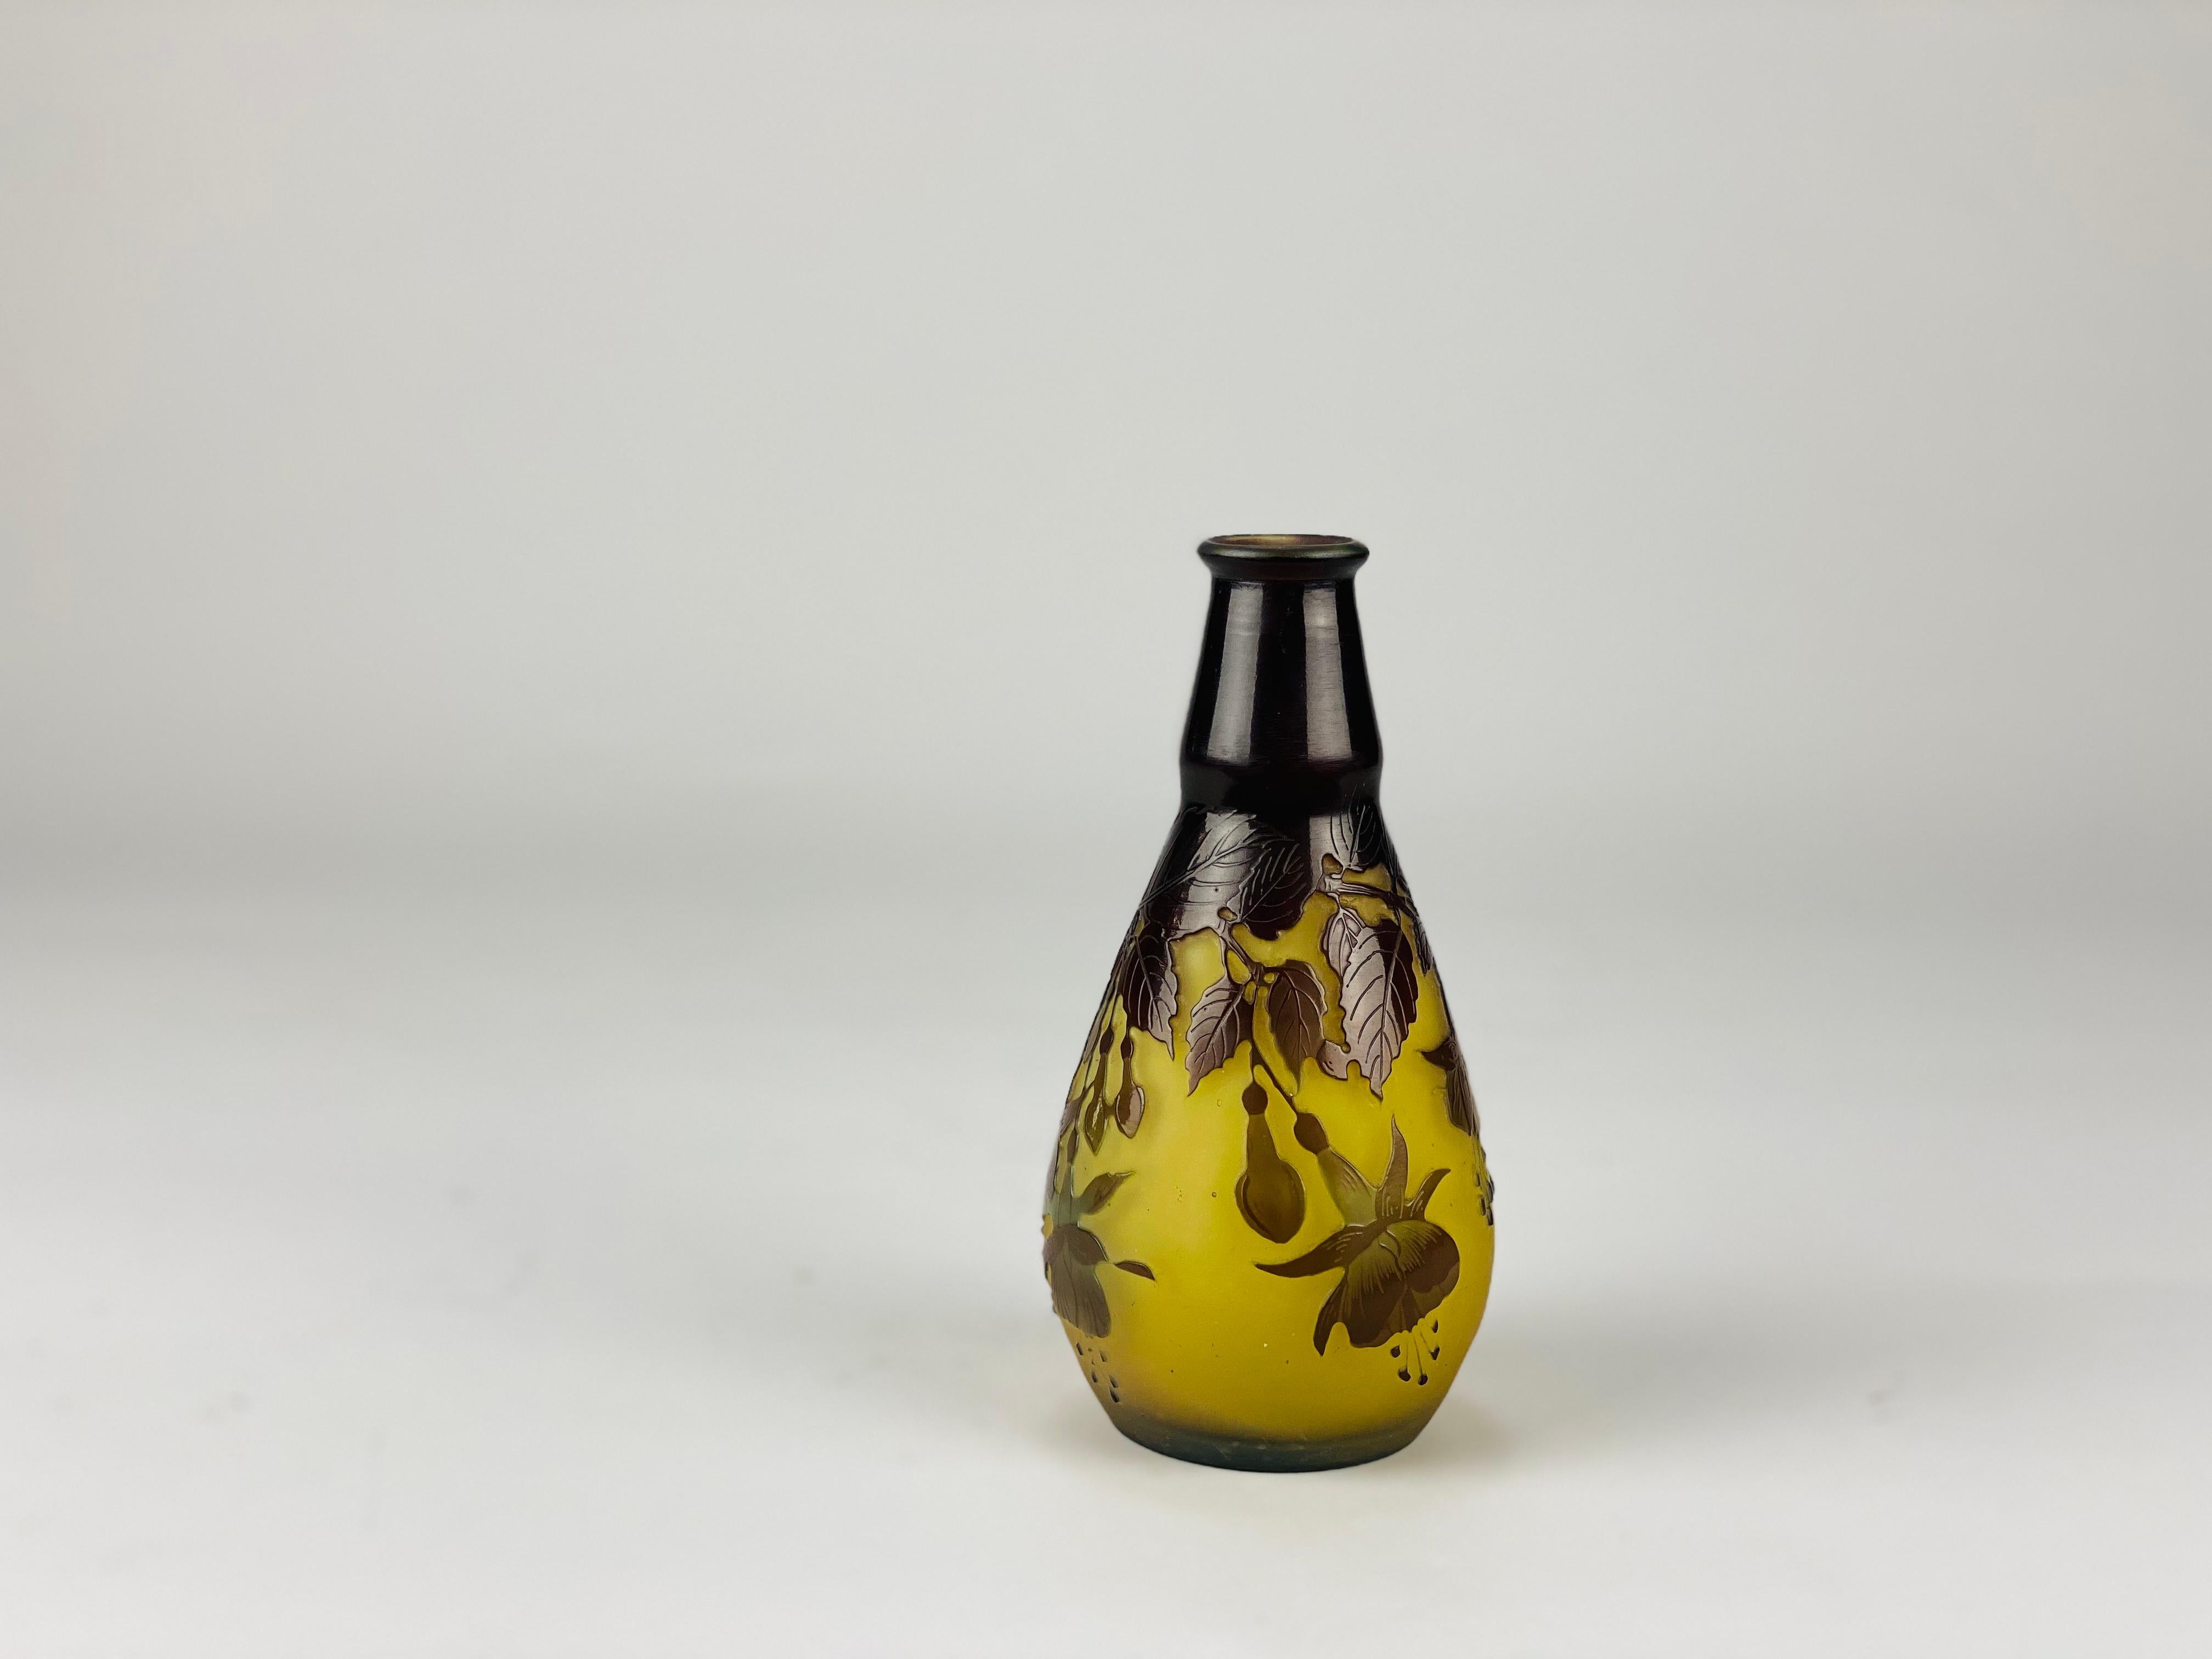 Un joli vase en verre camée de la fin du 19e siècle, taillé avec des fleurs de fuchsia mauves décoratives dans un paysage sur un champ jaune chaud, avec d'excellents détails et couleurs finis à la main, signé Galle en camée.
Informations